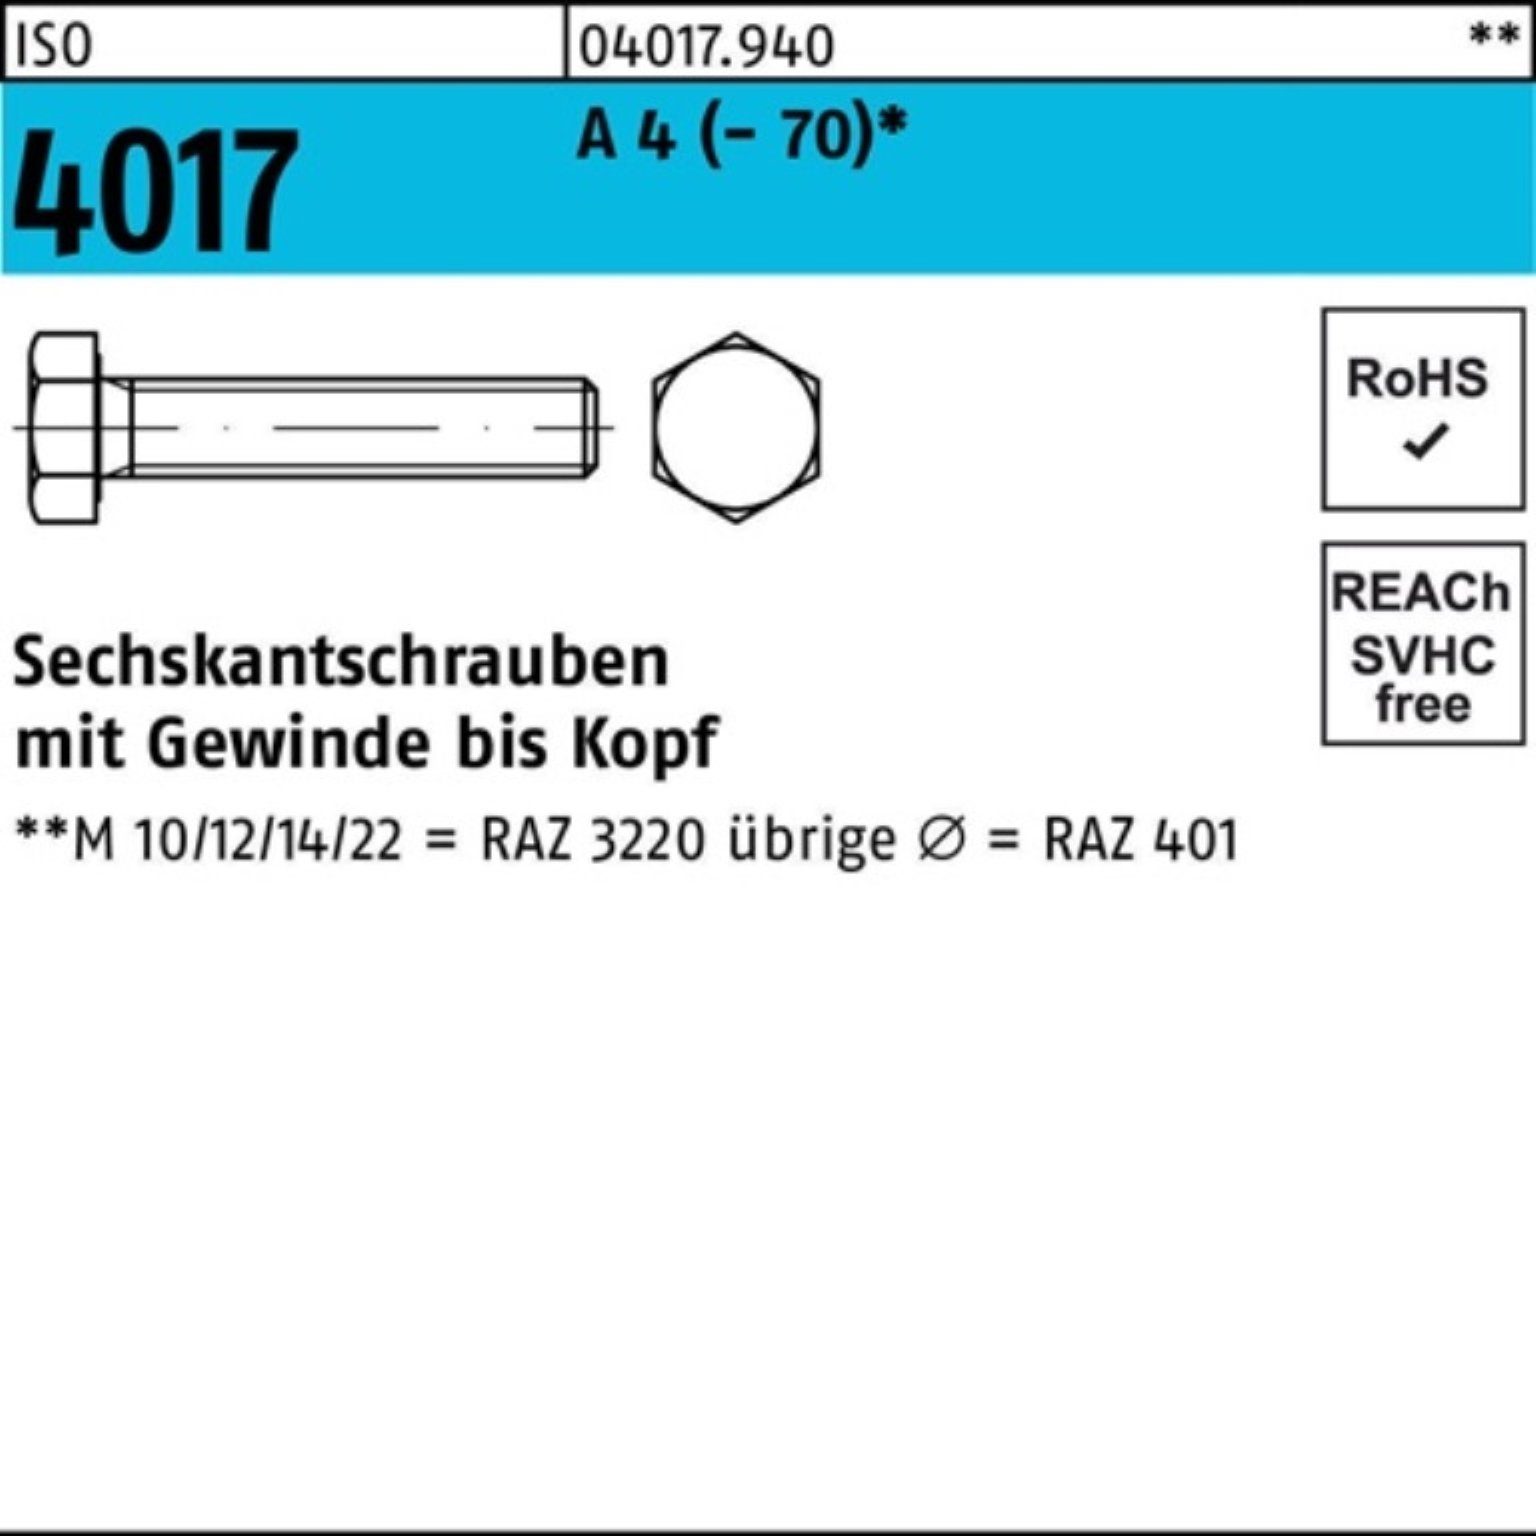 Bufab Sechskantschraube 100er Pack Sechskantschraube ISO 4017 VG M10x 40 A 4 (70) 100 Stück